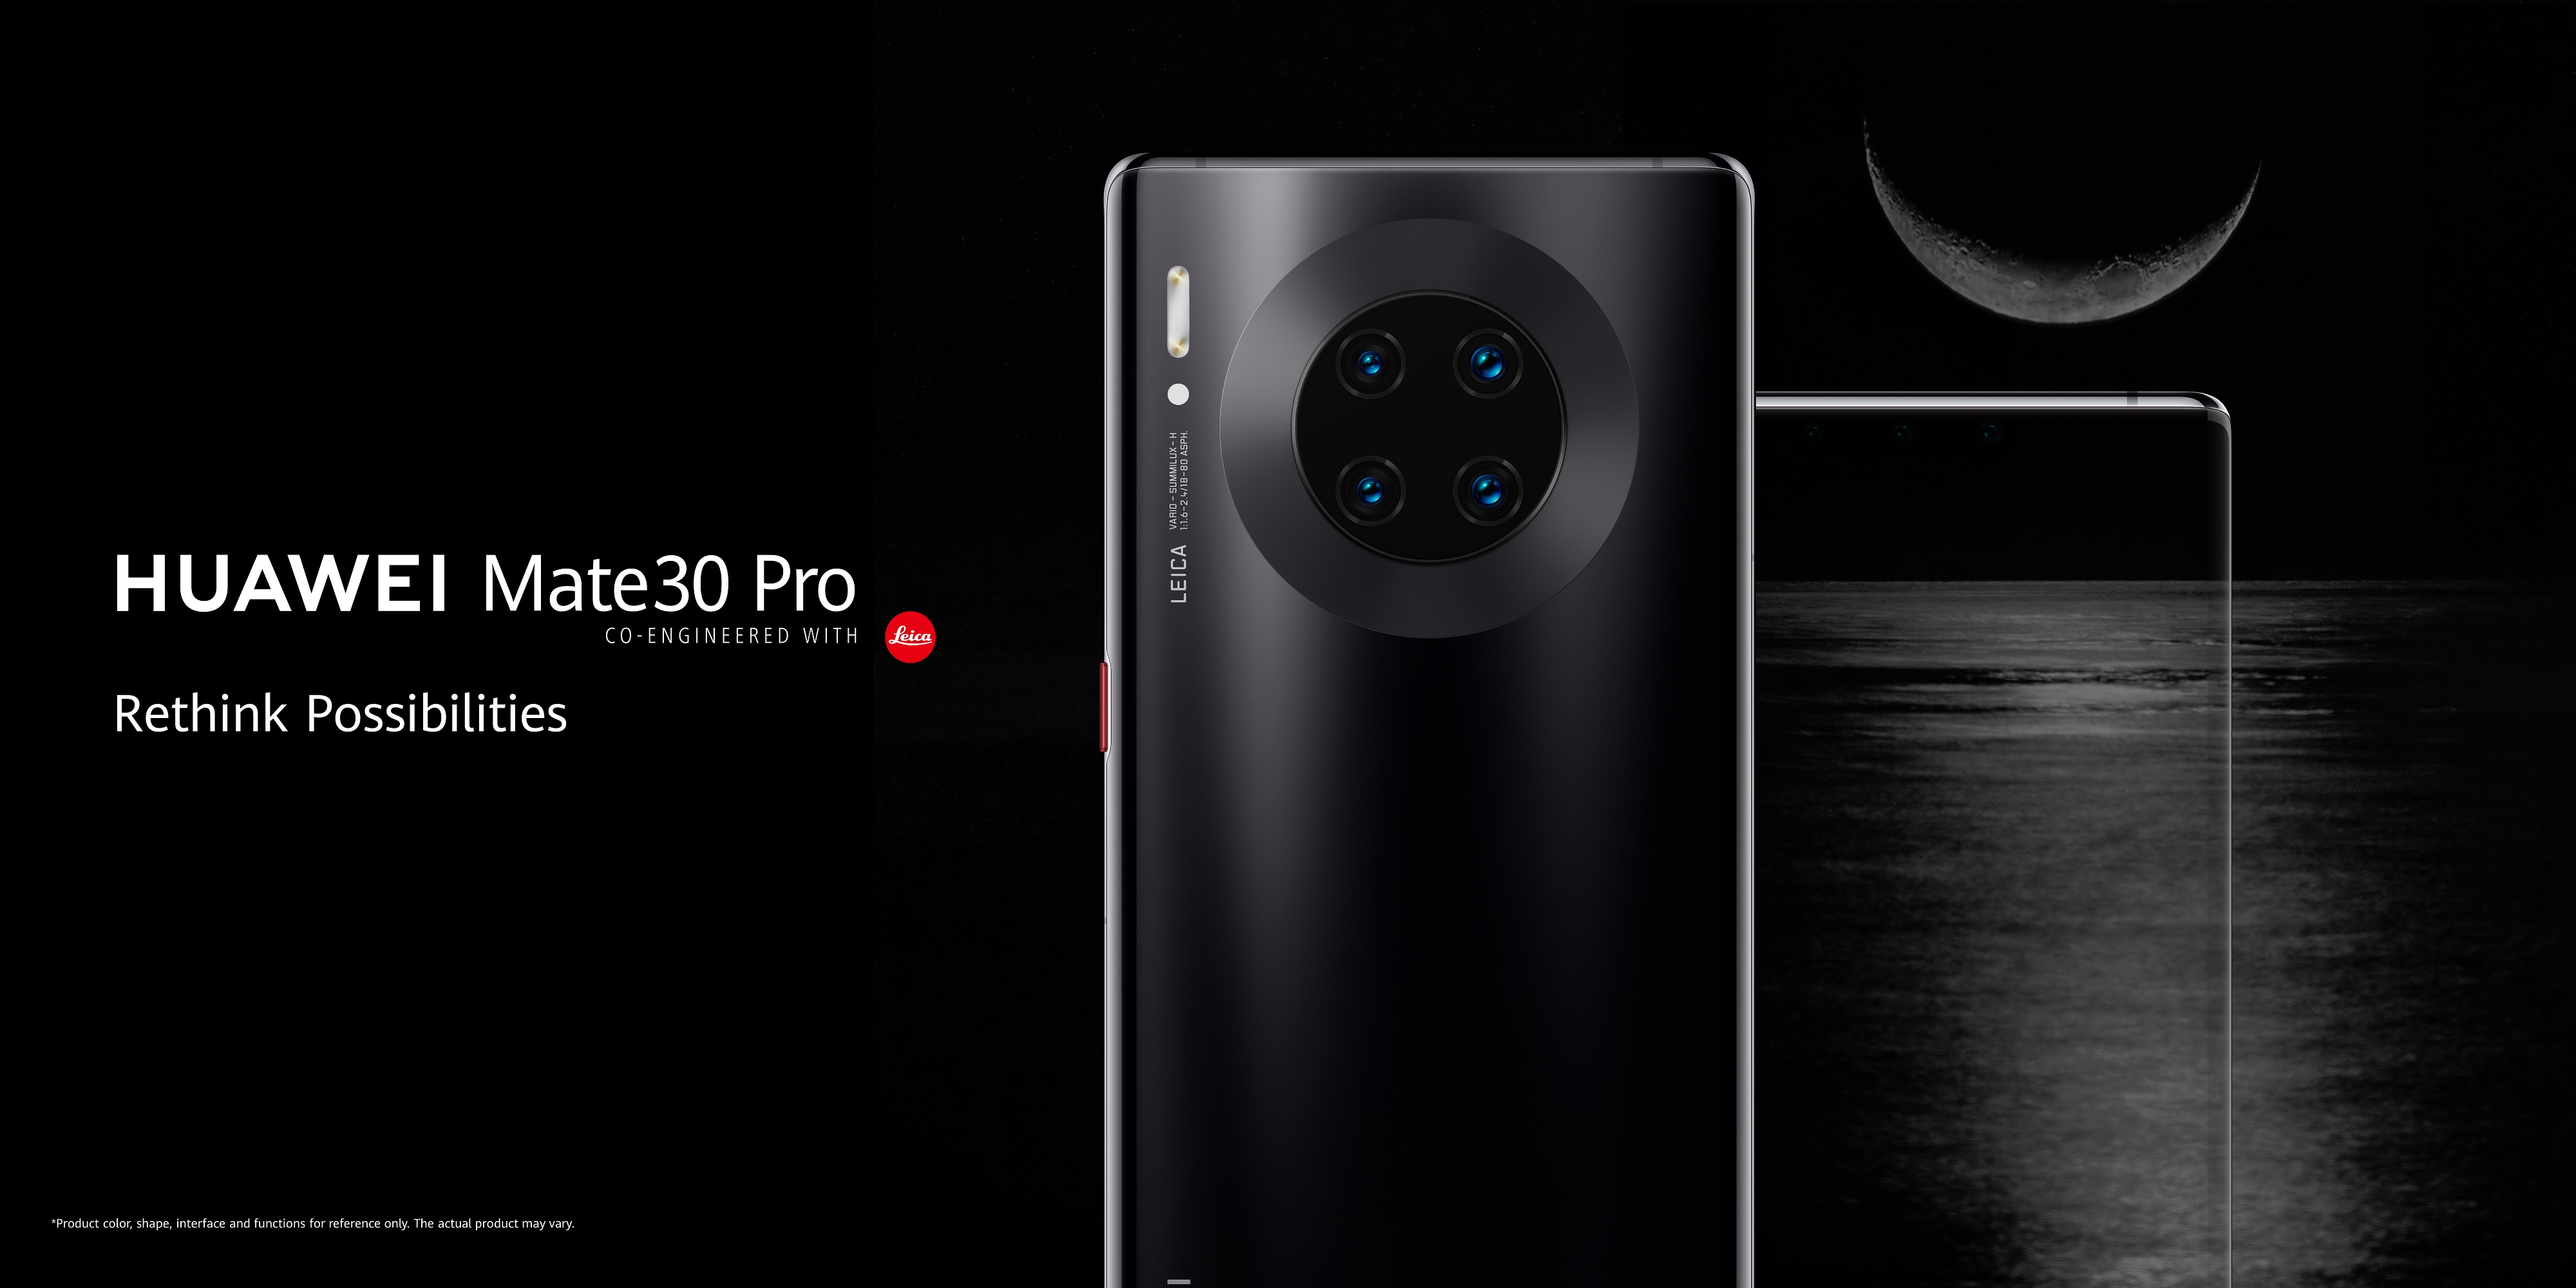 هاتفHuawei Mate 30 Pro  يتميّز بأدائه القوي وتصميمه الأيقوني وقدرته على الارتقاء بتجربة تصوير مقاطع الفيديو إلى آفاق جديدة